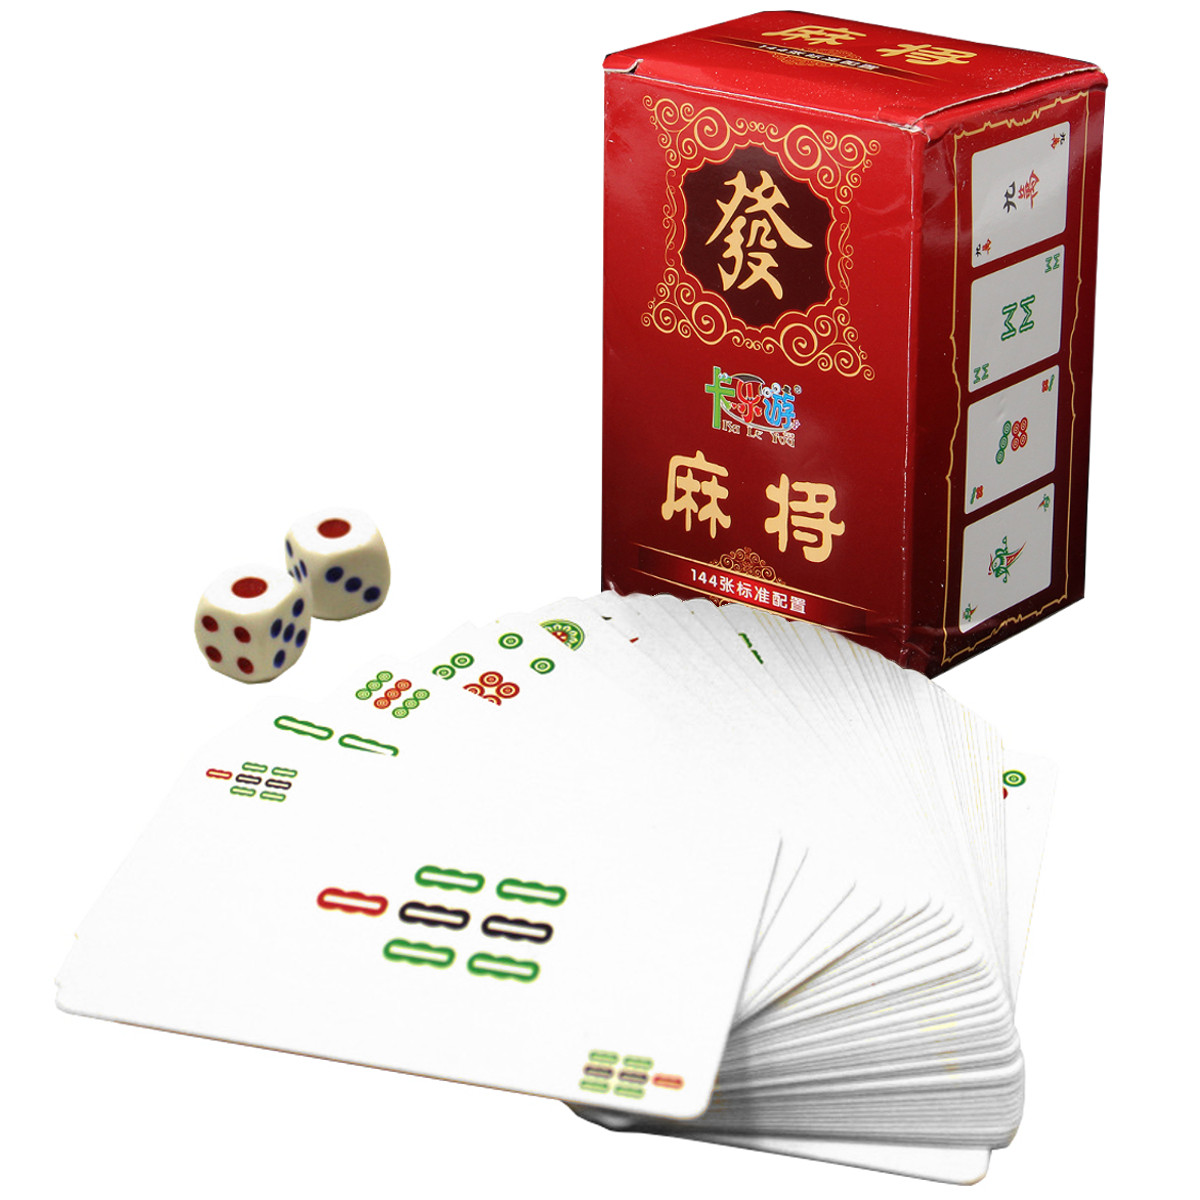 Играть в i карты китайские чат рулетка онлайн бесплатная